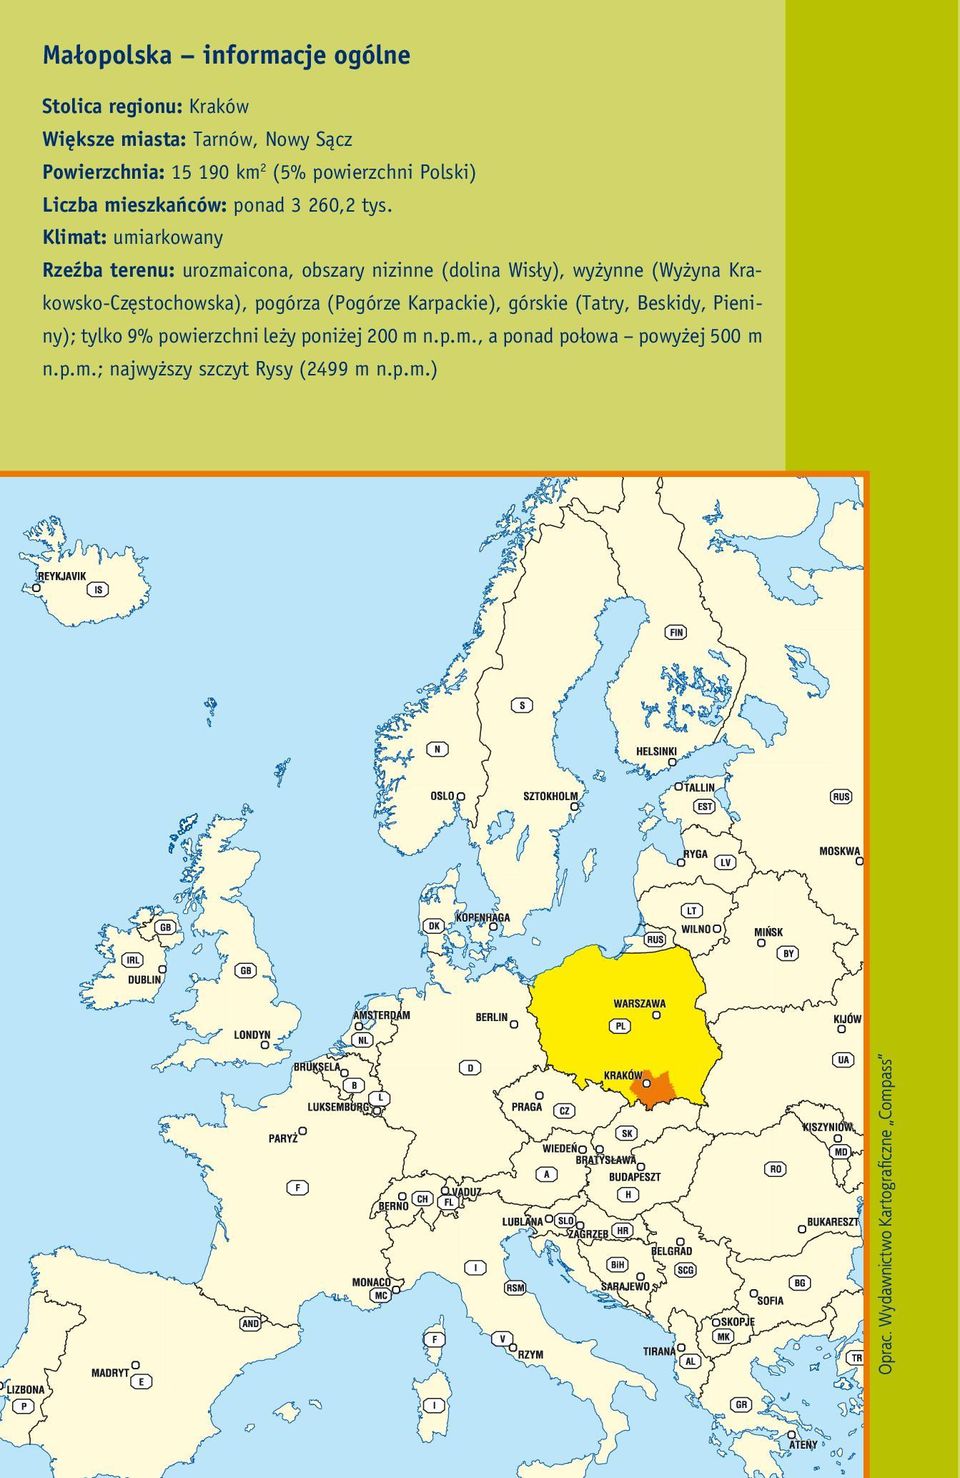 Klimat: umiarkowany Rzeźba terenu: urozmaicona, obszary nizinne (dolina Wisły), wyżynne (Wyżyna Krakowsko-Częstochowska), pogórza